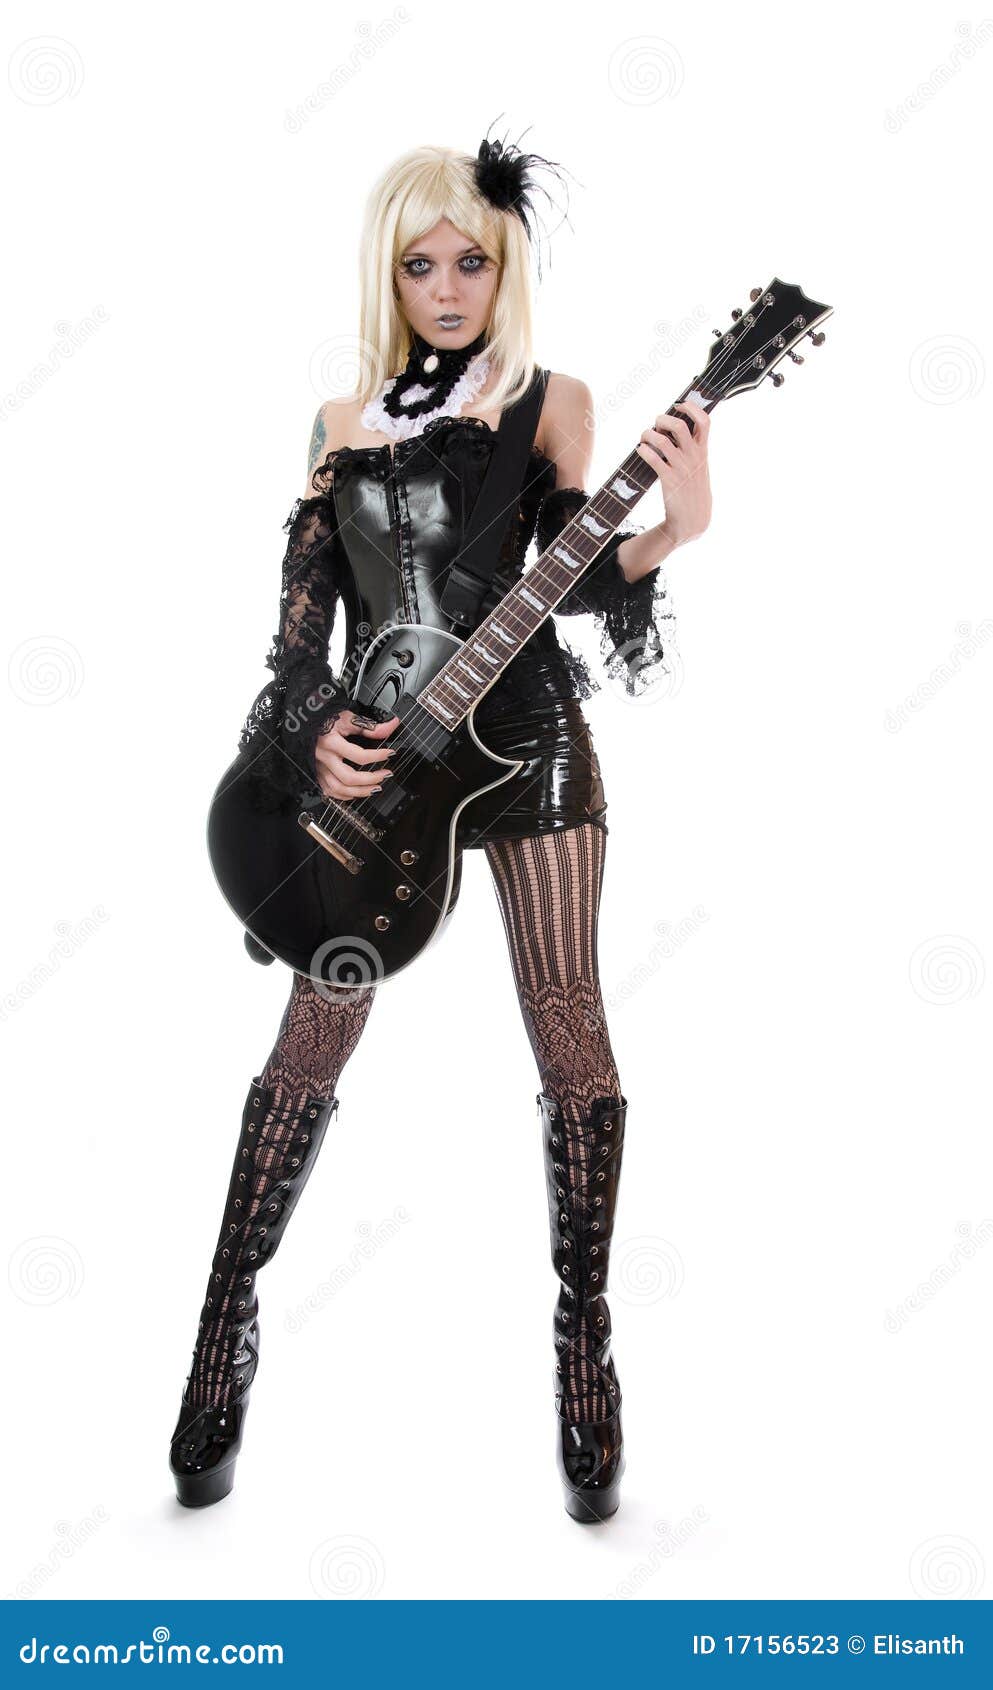 Woman With Guitar Stock Photos - Image: 17156523